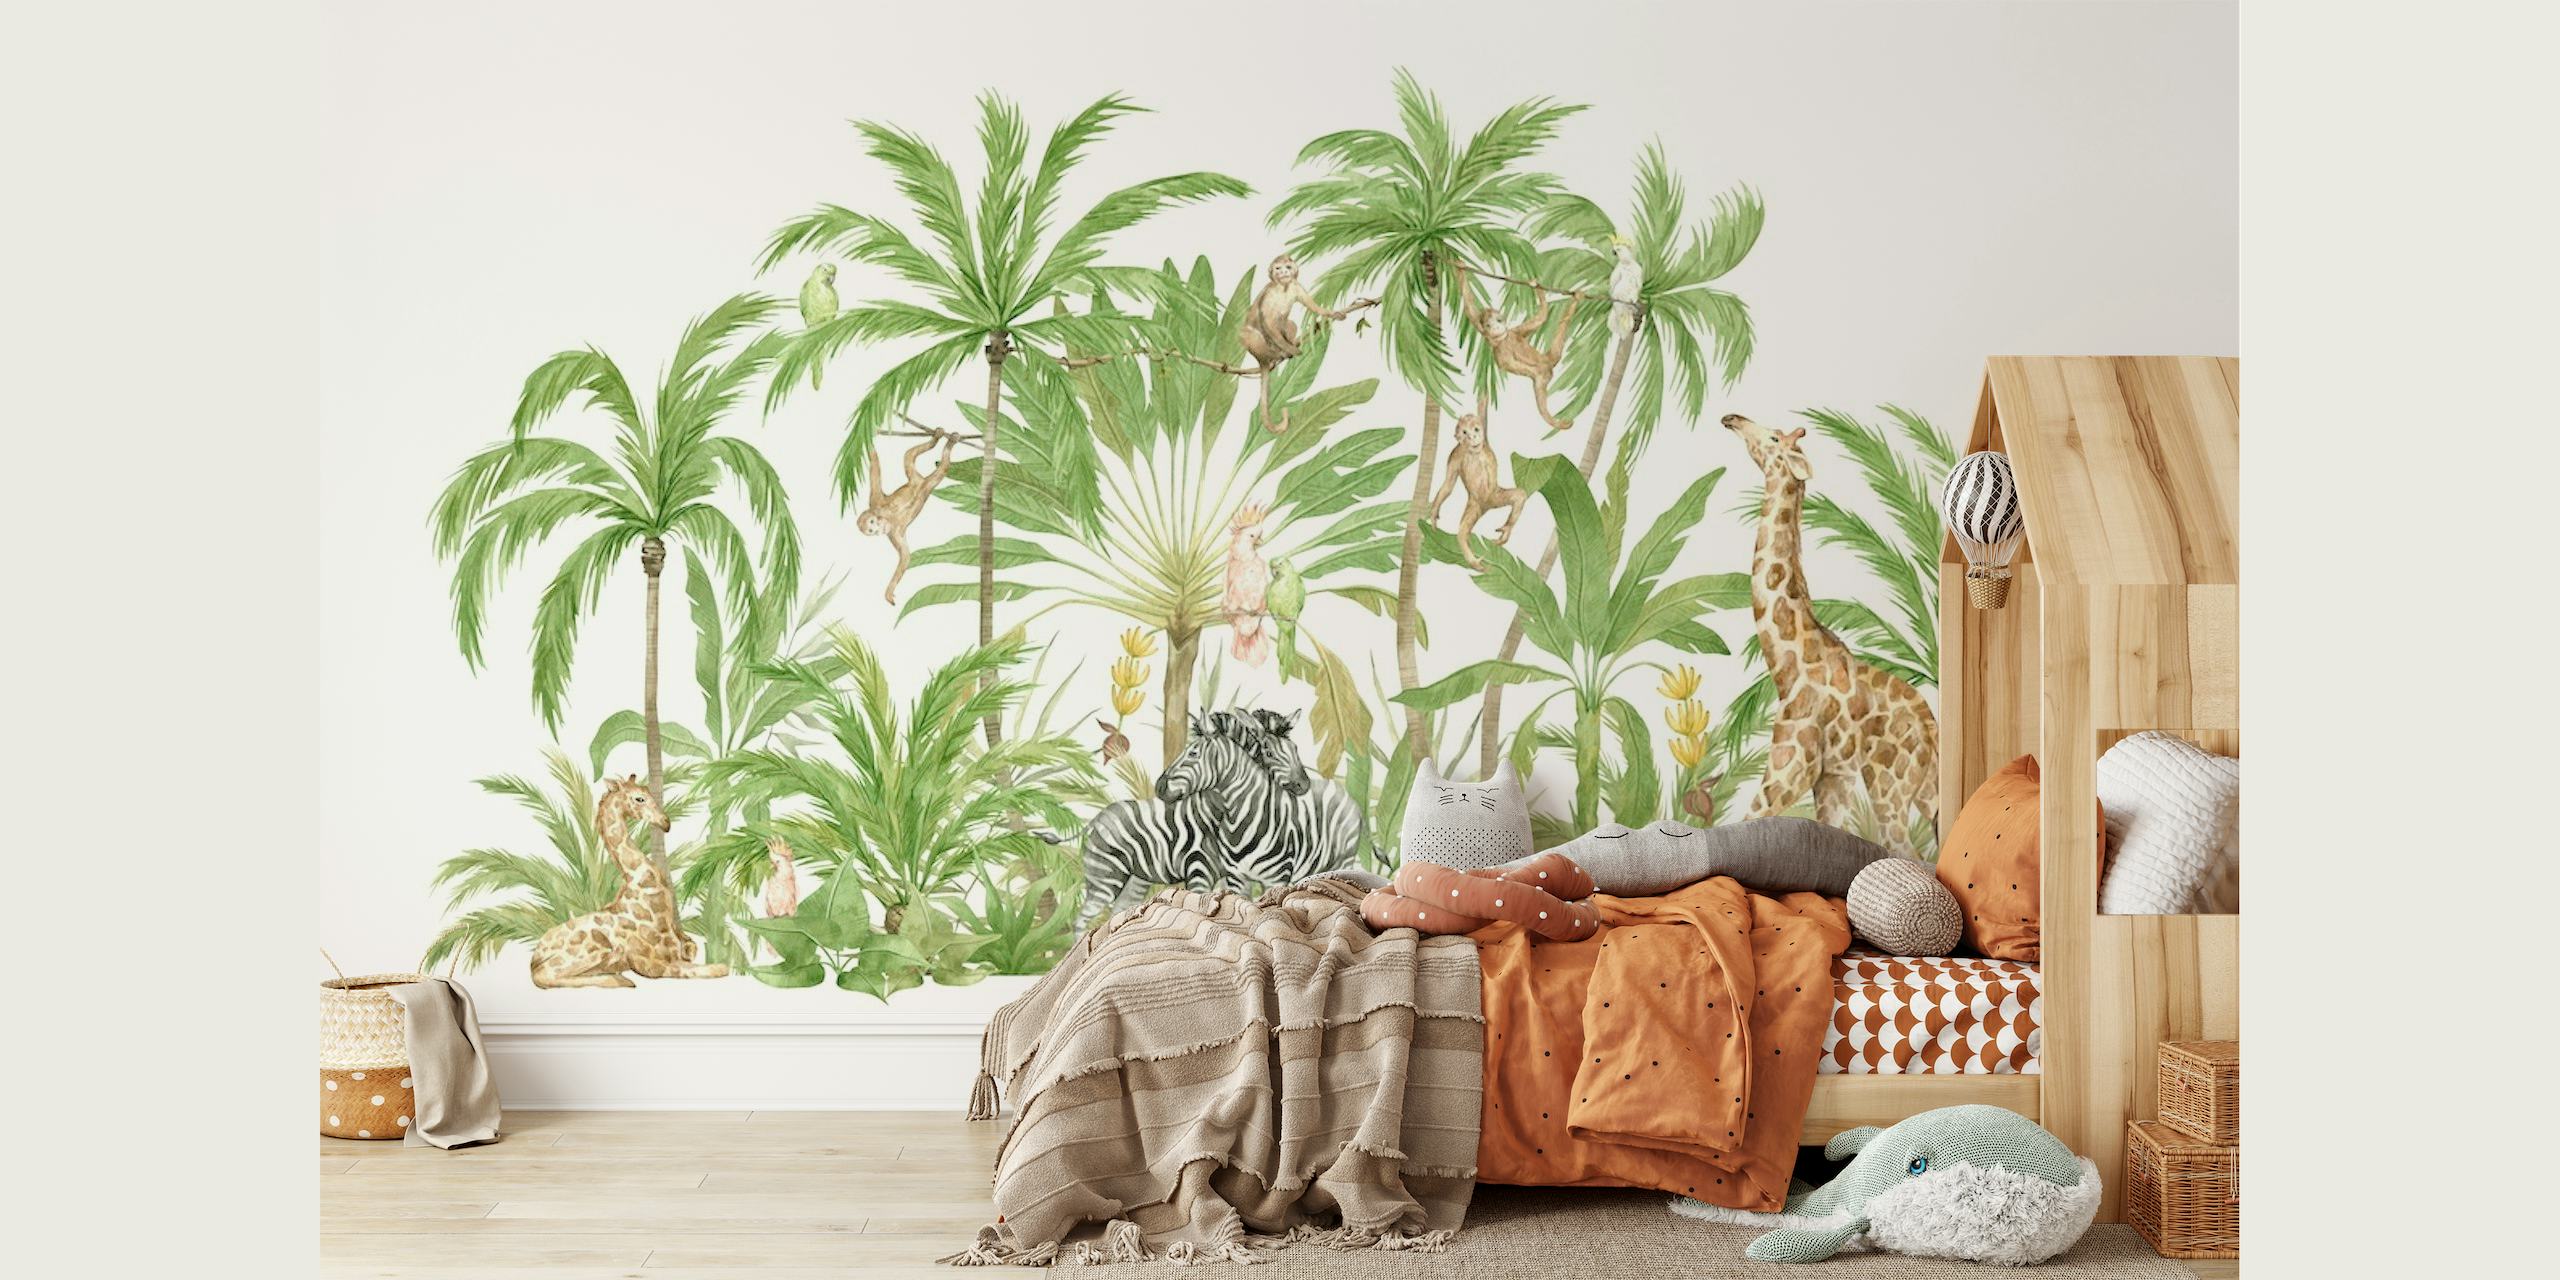 Ilustração de uma cena pacífica de safári com vida selvagem e plantas tropicais no fotomural vinílico de parede